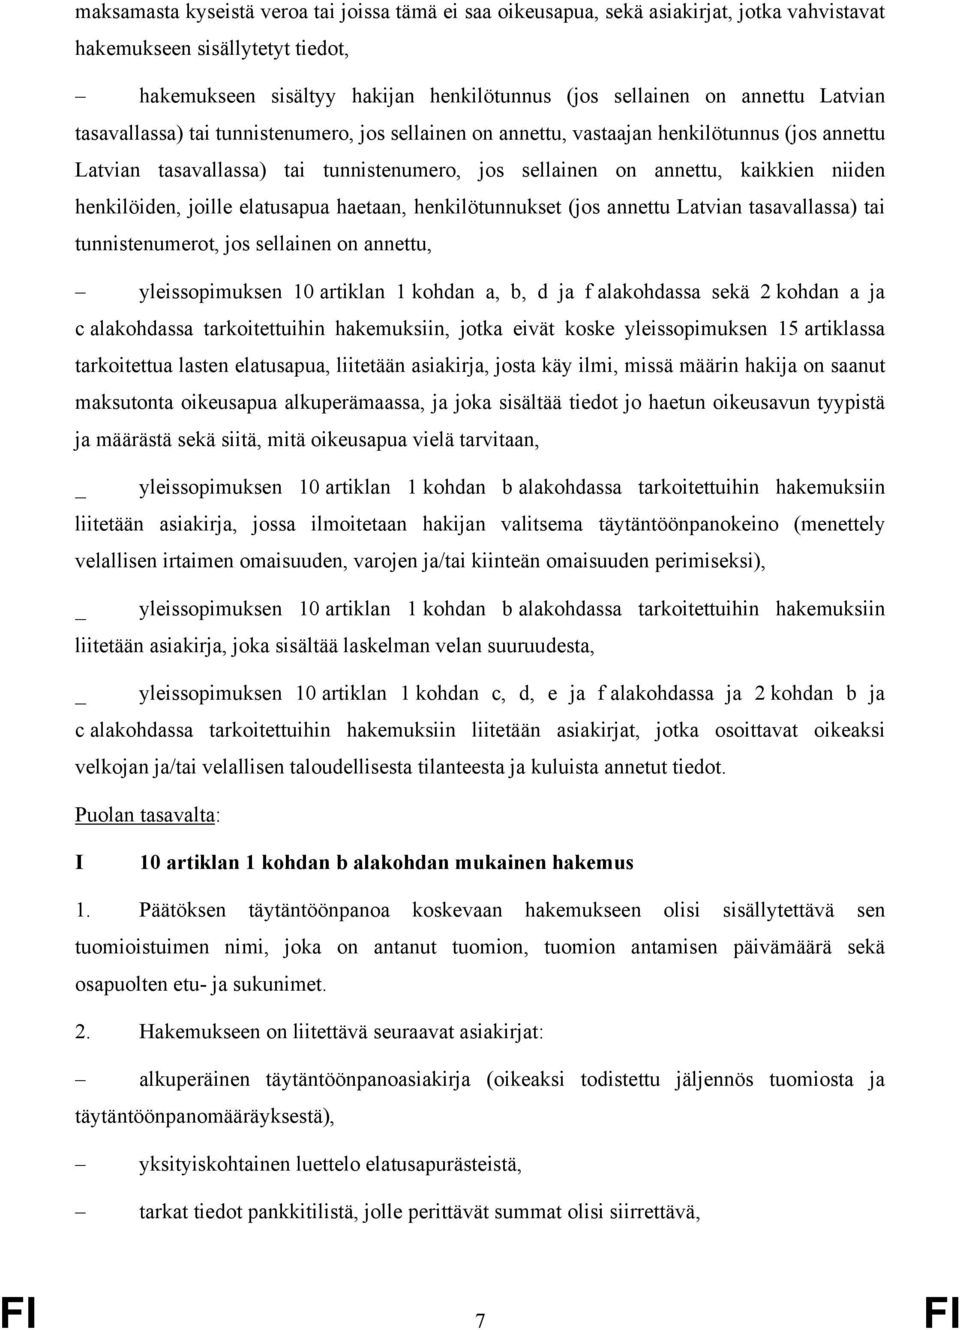 henkilöiden, joille elatusapua haetaan, henkilötunnukset (jos annettu Latvian tasavallassa) tai tunnistenumerot, jos sellainen on annettu, yleissopimuksen 10 artiklan 1 kohdan a, b, d ja f